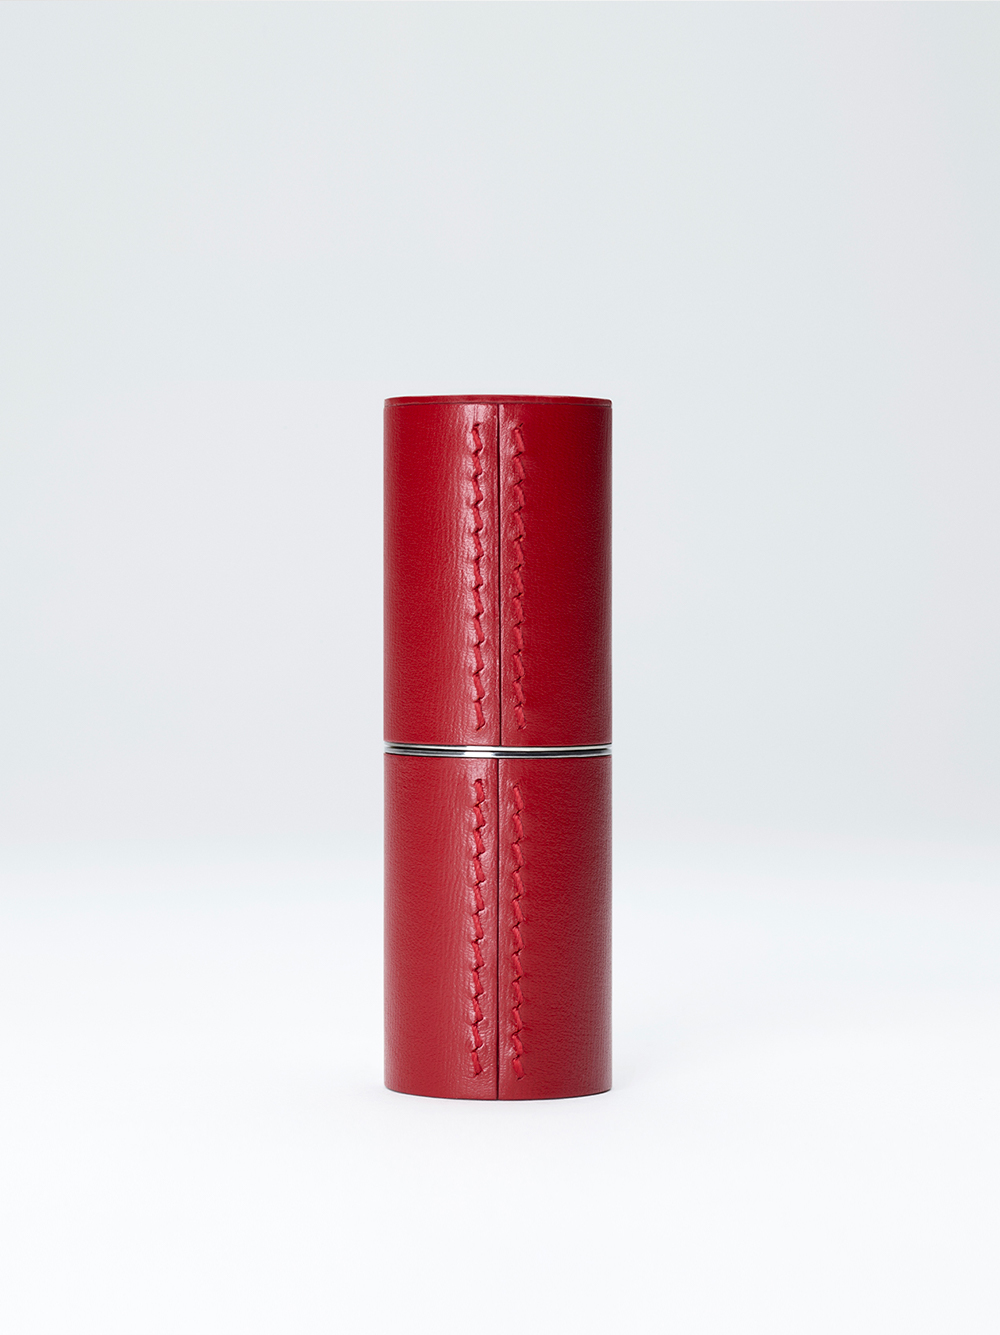 Red leather case - La bouche rouge, Paris